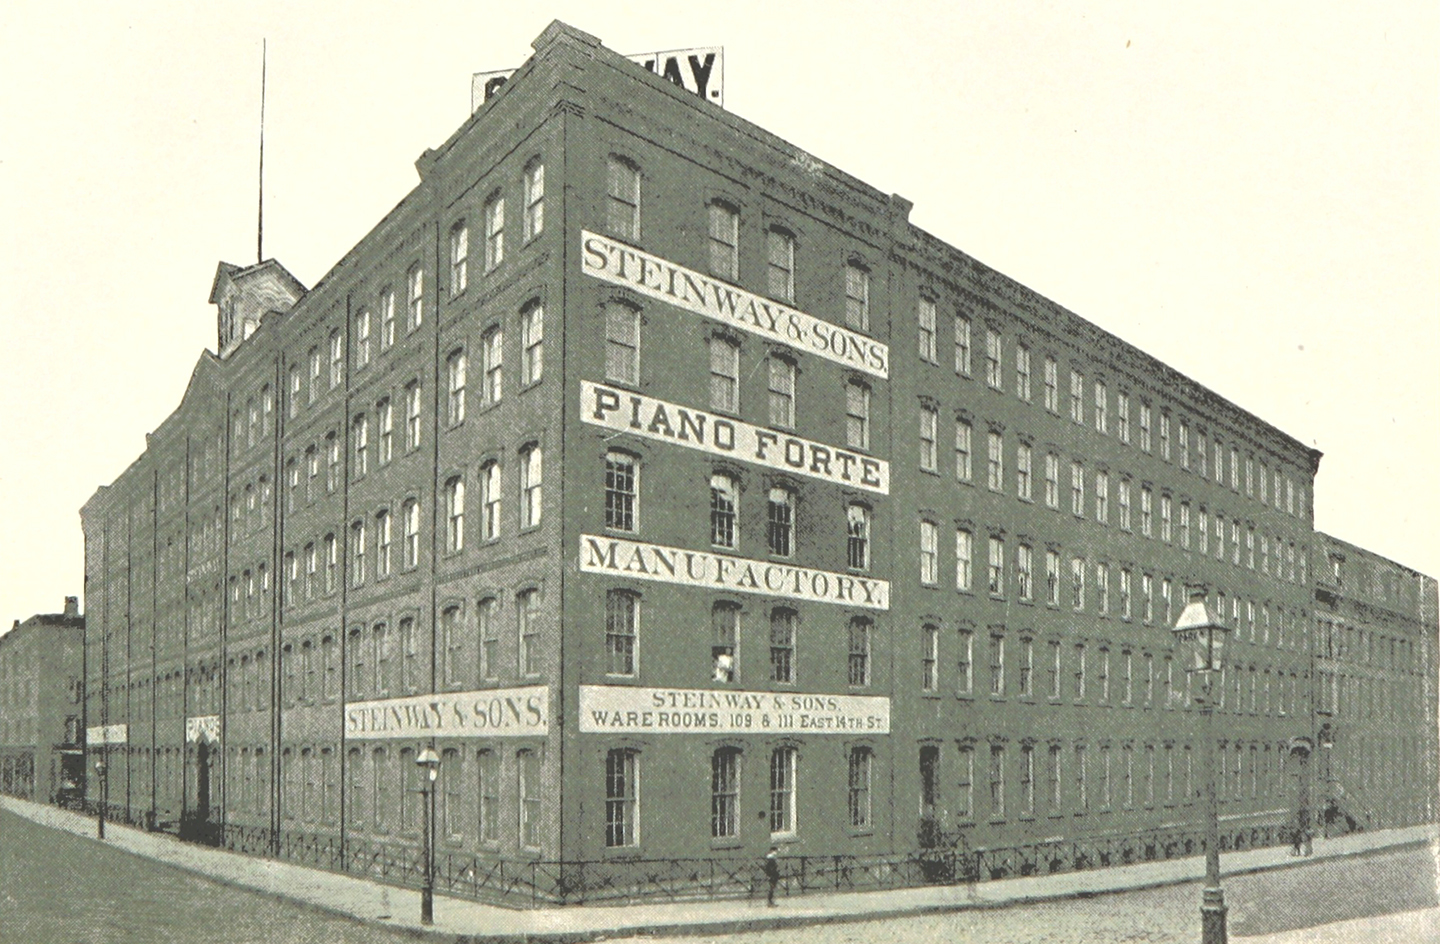 Công ty Steinway & Sons trên Đại lộ Park Ave, năm 1893, từ “King's Handbook of New York City.” (Sổ Tay Hướng Dẫn về Thành Phố New York của King). Thư viện Anh quốc. (Ảnh: Tư liệu công cộng)